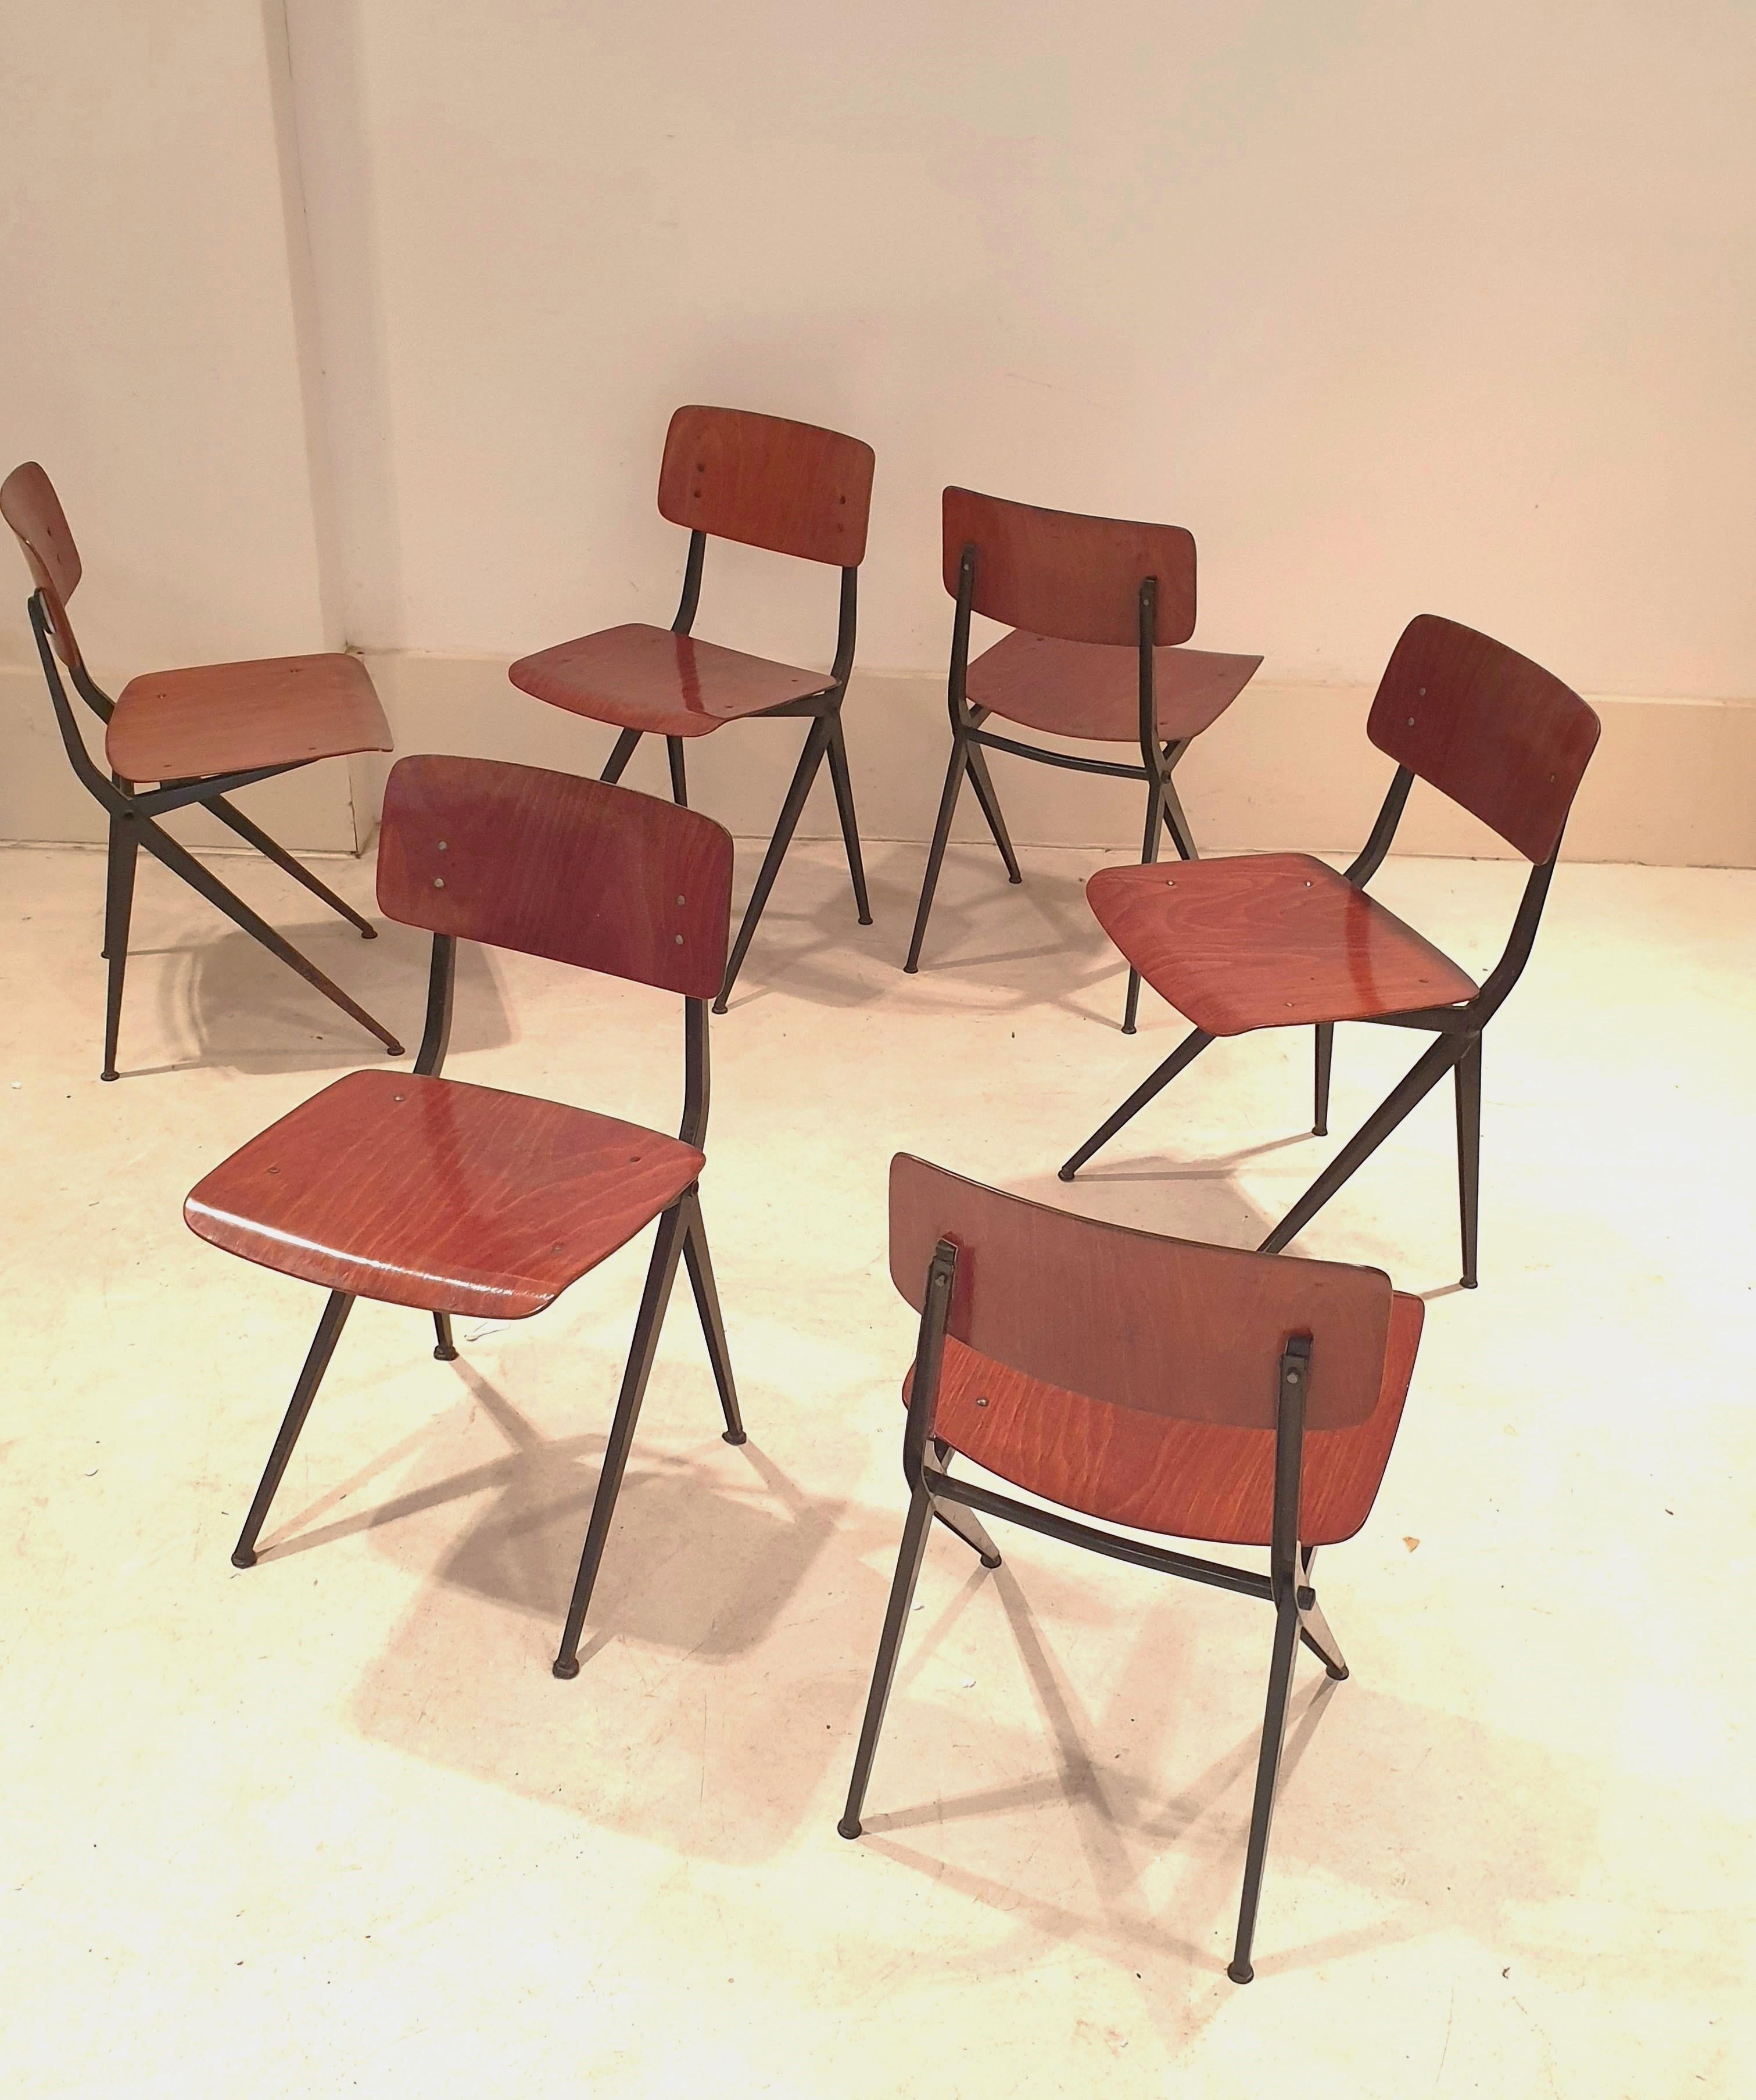 Ensemble de 6 chaises de style industriel par Marko Holland. Ces chaises utilitaires confortables ont de belles assises et dossiers en teck vieilli et des piétements minimalistes en métal laqué noir. Leur simplicité leur permet de s'intégrer dans